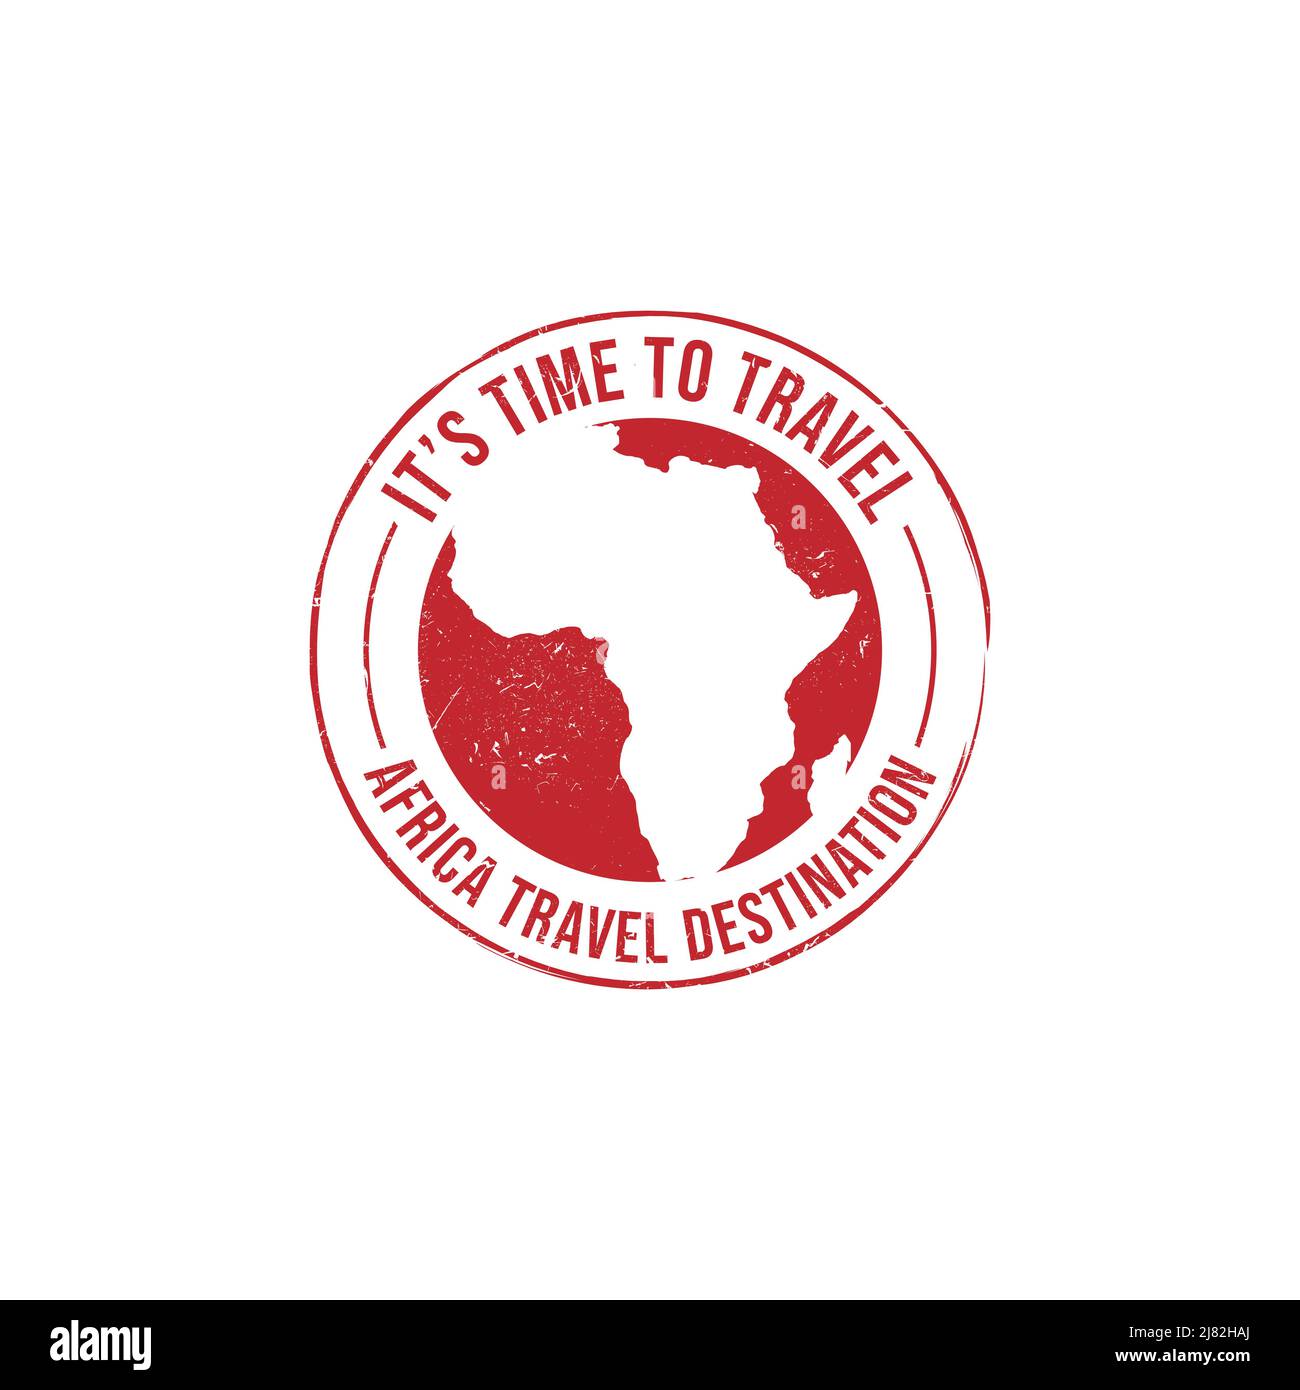 Gratrez le tampon en caoutchouc avec le texte icône Afrique carte destination de voyage inscrit à l'intérieur du tampon. Destination voyage Afrique timbre caoutchouc grunge Illustration de Vecteur